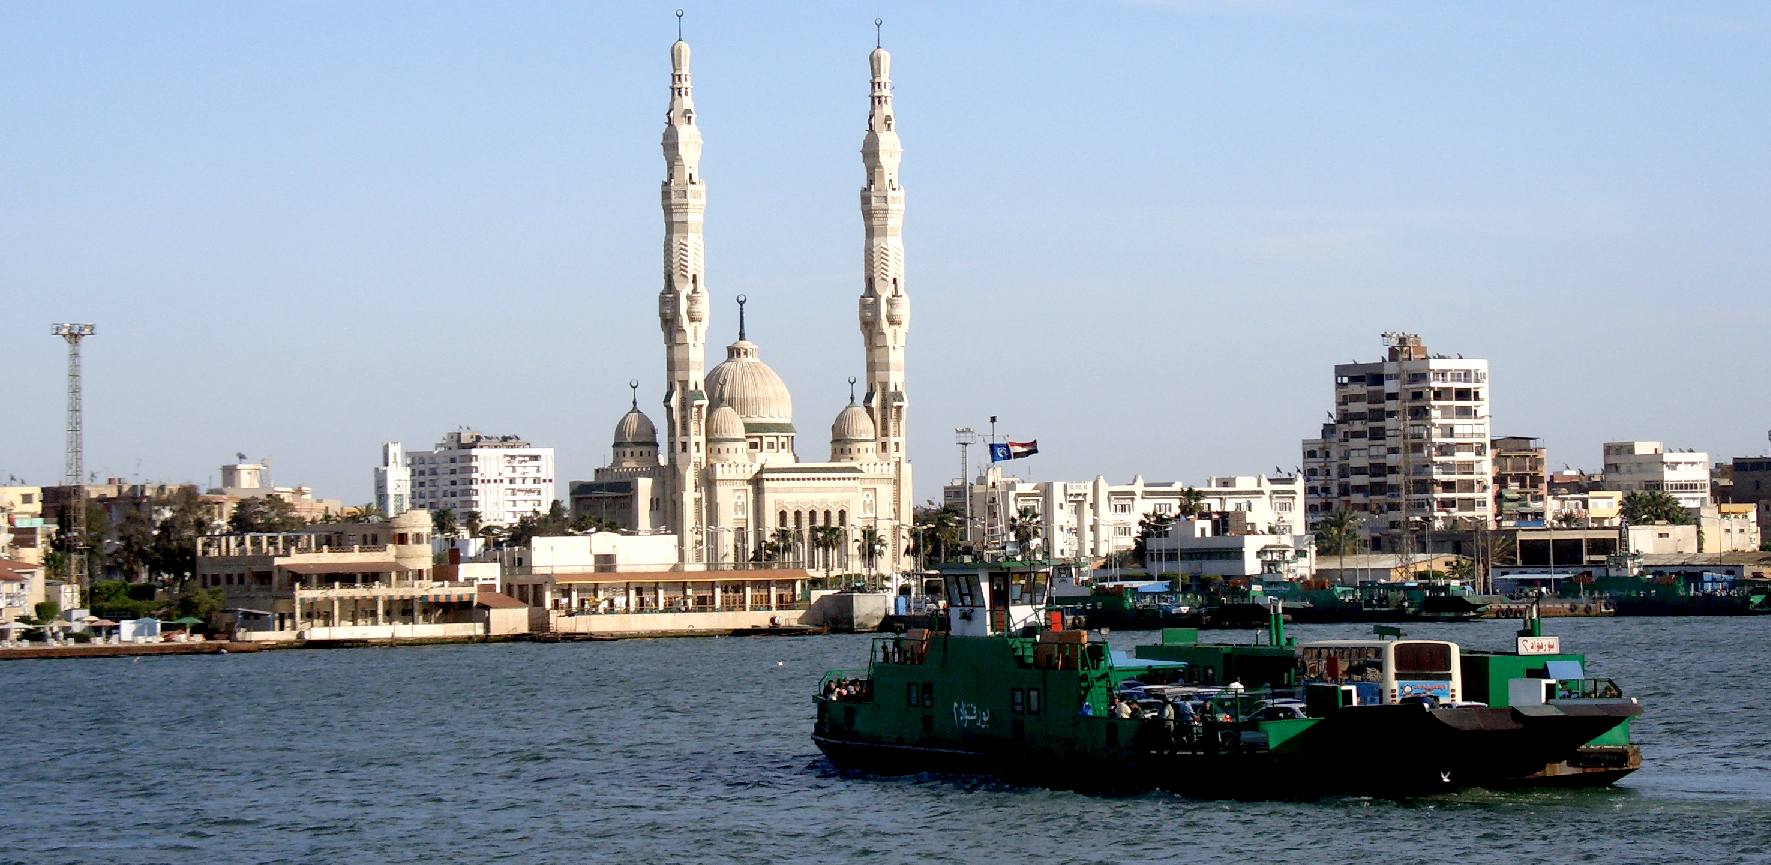 Port Said, ZEWT hydrogen world challenge